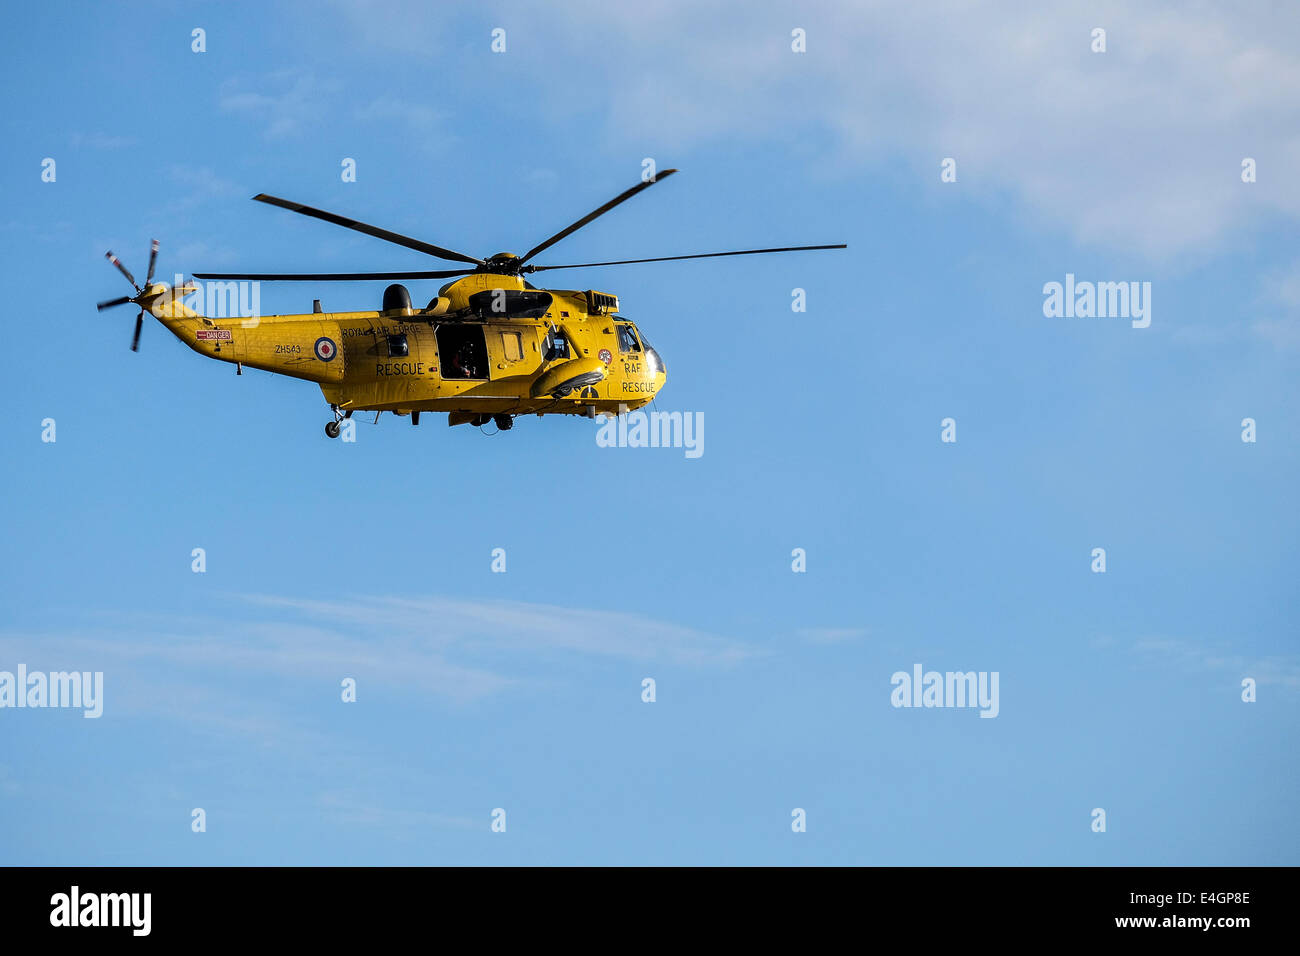 Un hélicoptère de sauvetage de la RAF volant au-dessus. Banque D'Images